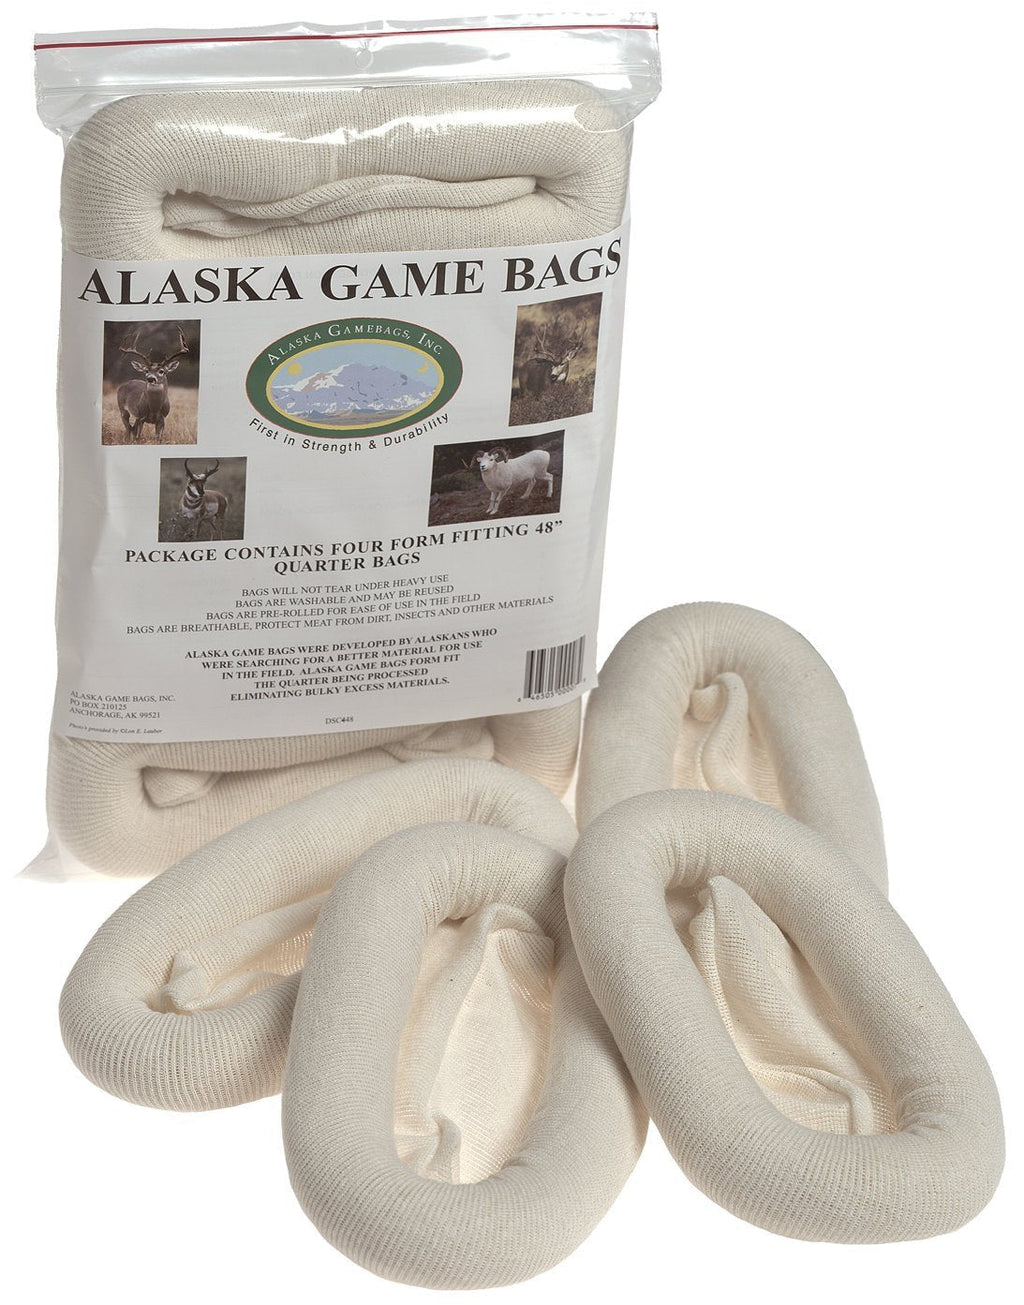 [AUSTRALIA] - Alaska Game Deer, Antelope and Sheep Bags, 48-Inch 4 Bags 